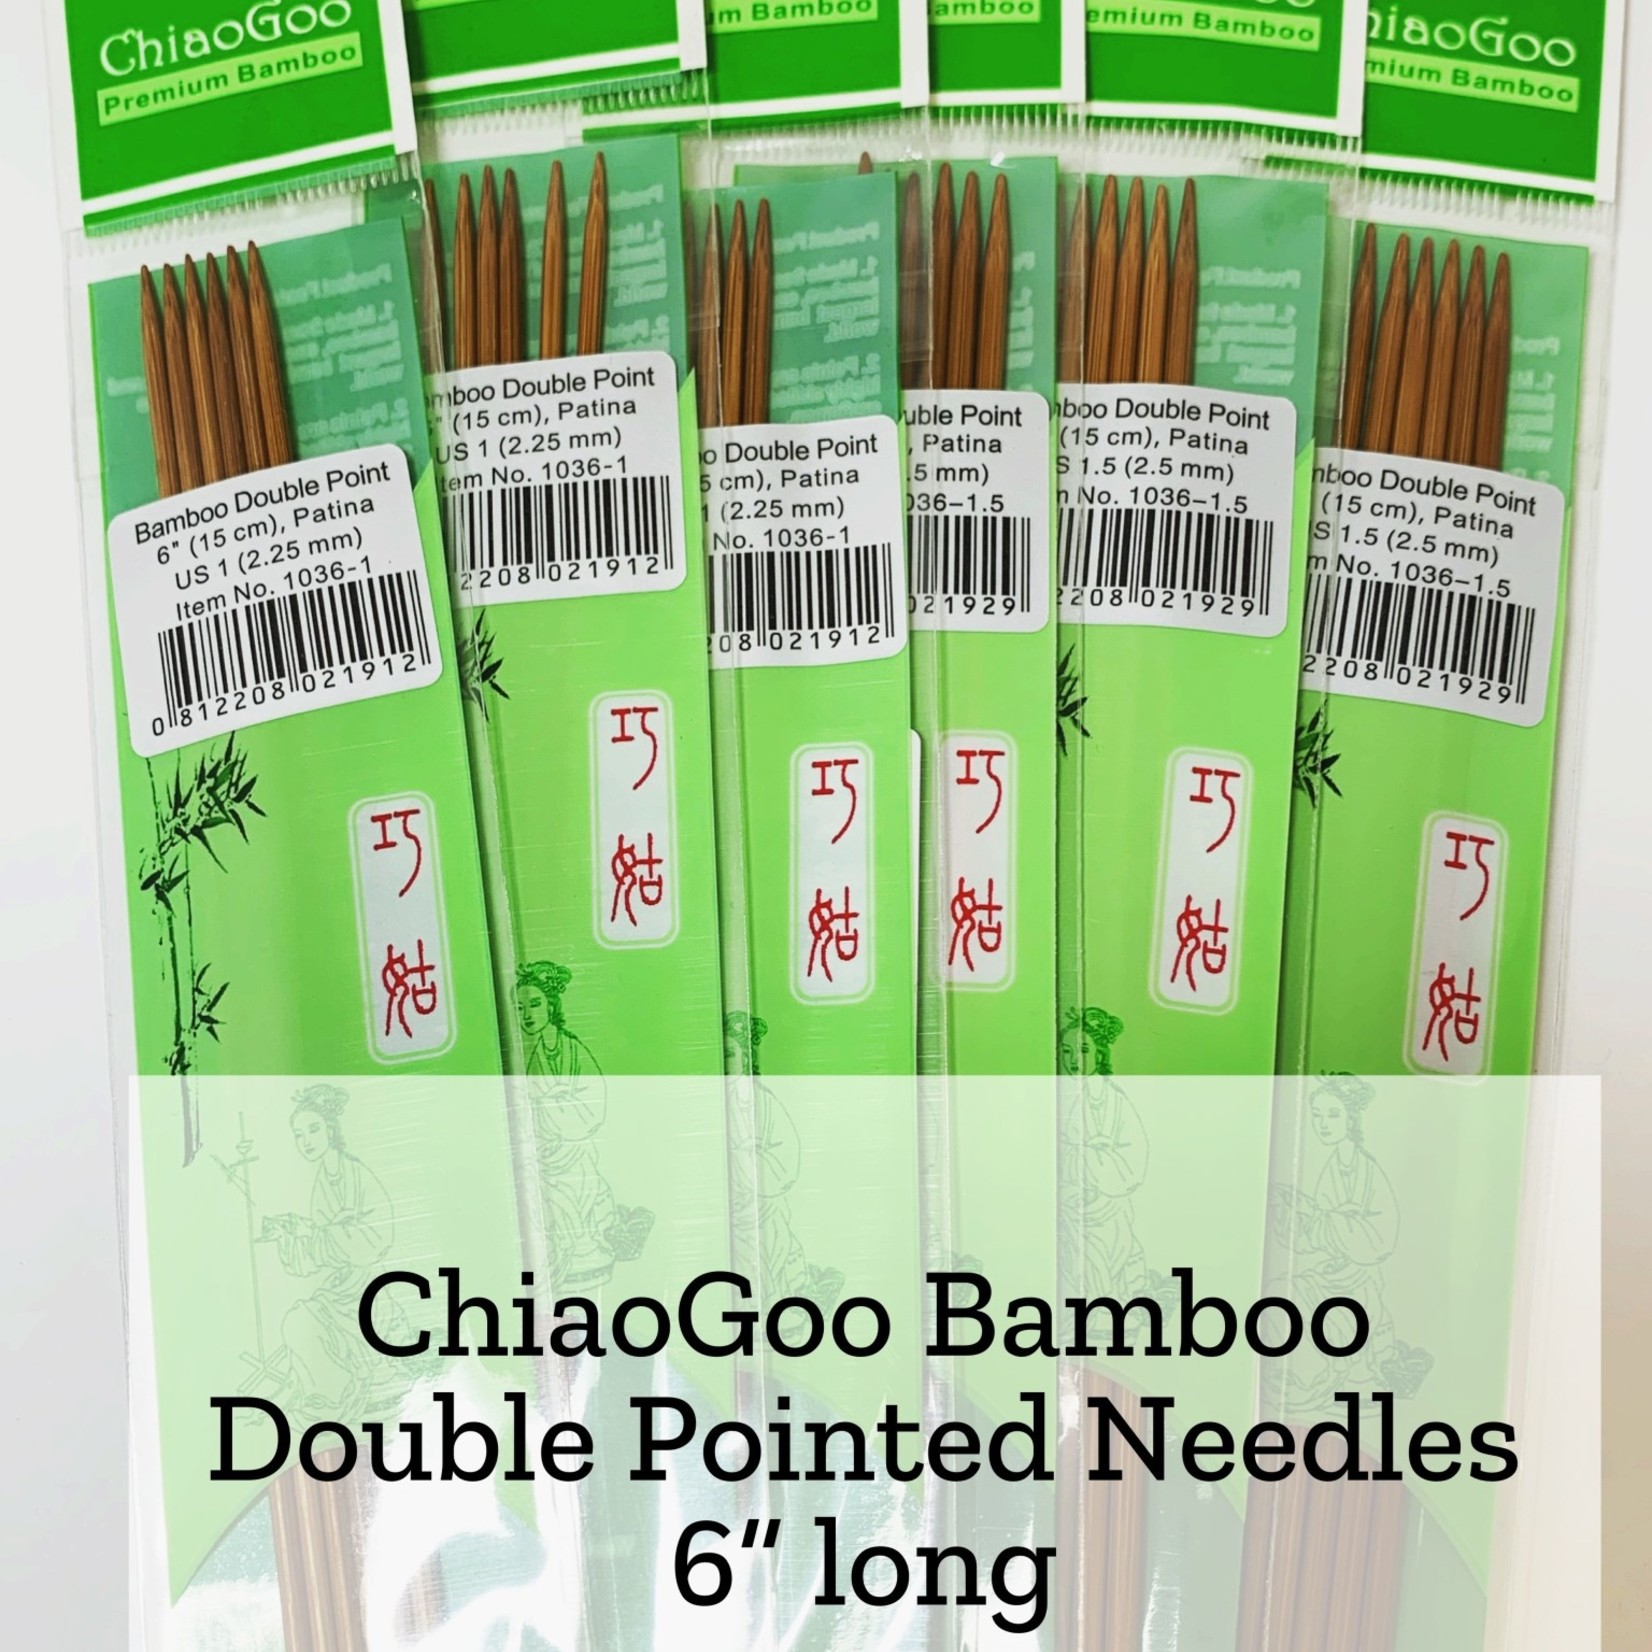 ChiaoGoo Bamboo DPN - 6" long - 3.5 mm